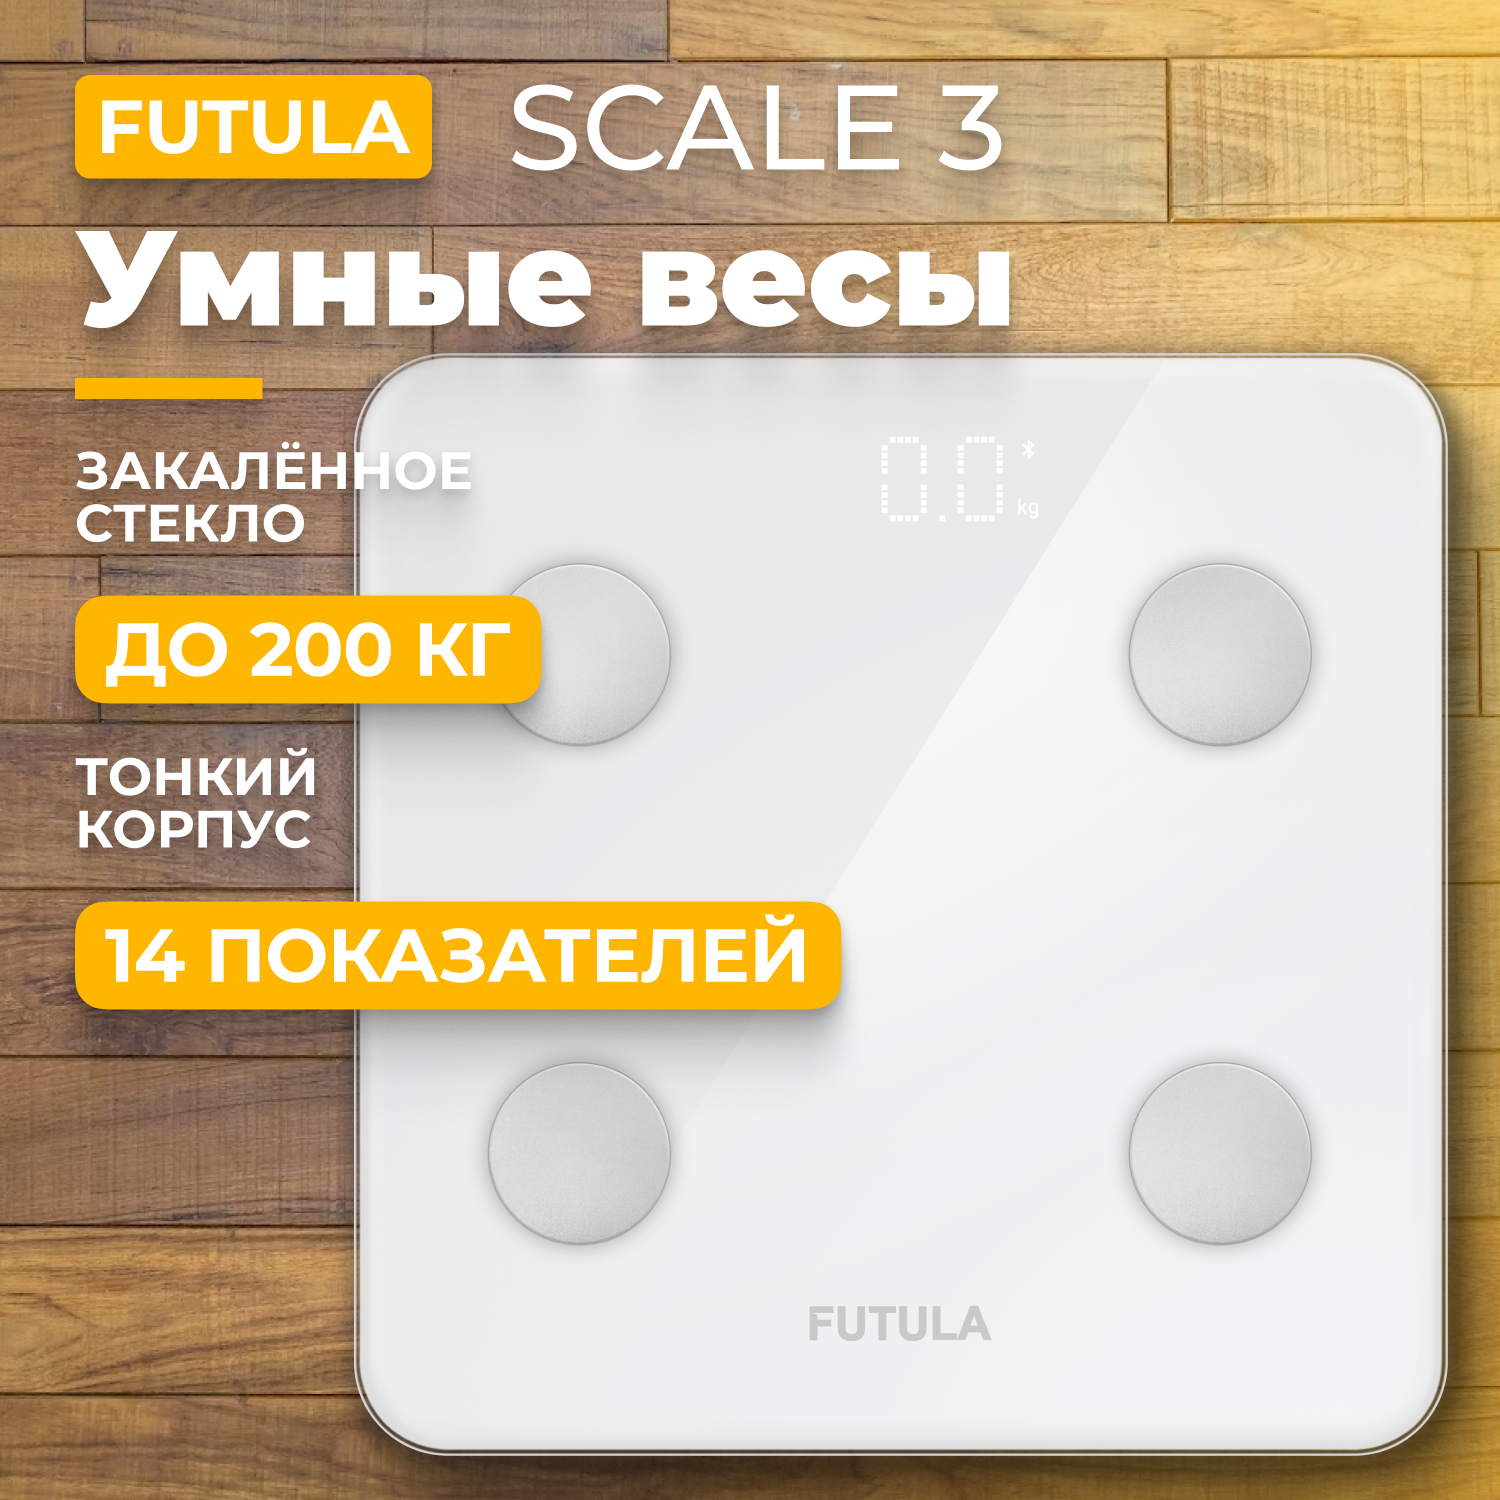 Весы напольные Futula Scale 3 White напольные весы xiaomi mi smart scale 2 white отличное состояние